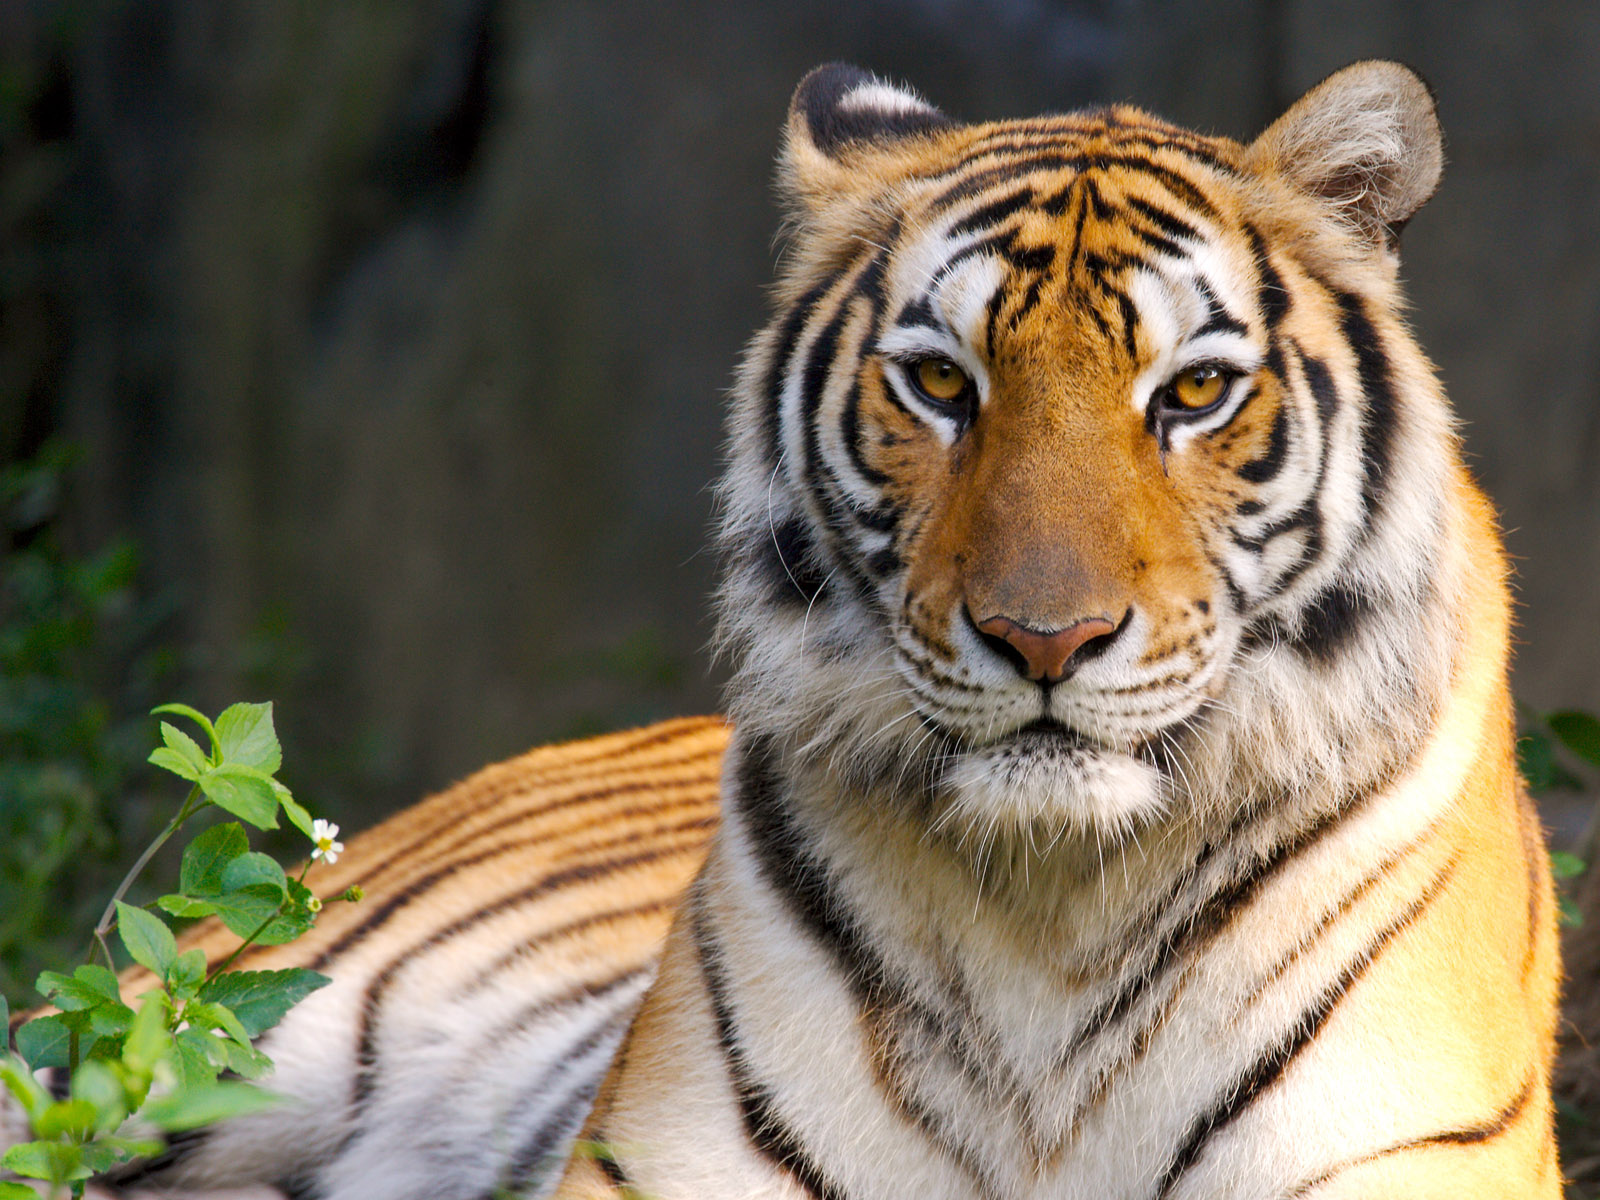 ek tha tiger white tigers wild tigers indian tigers cute tigers tiger